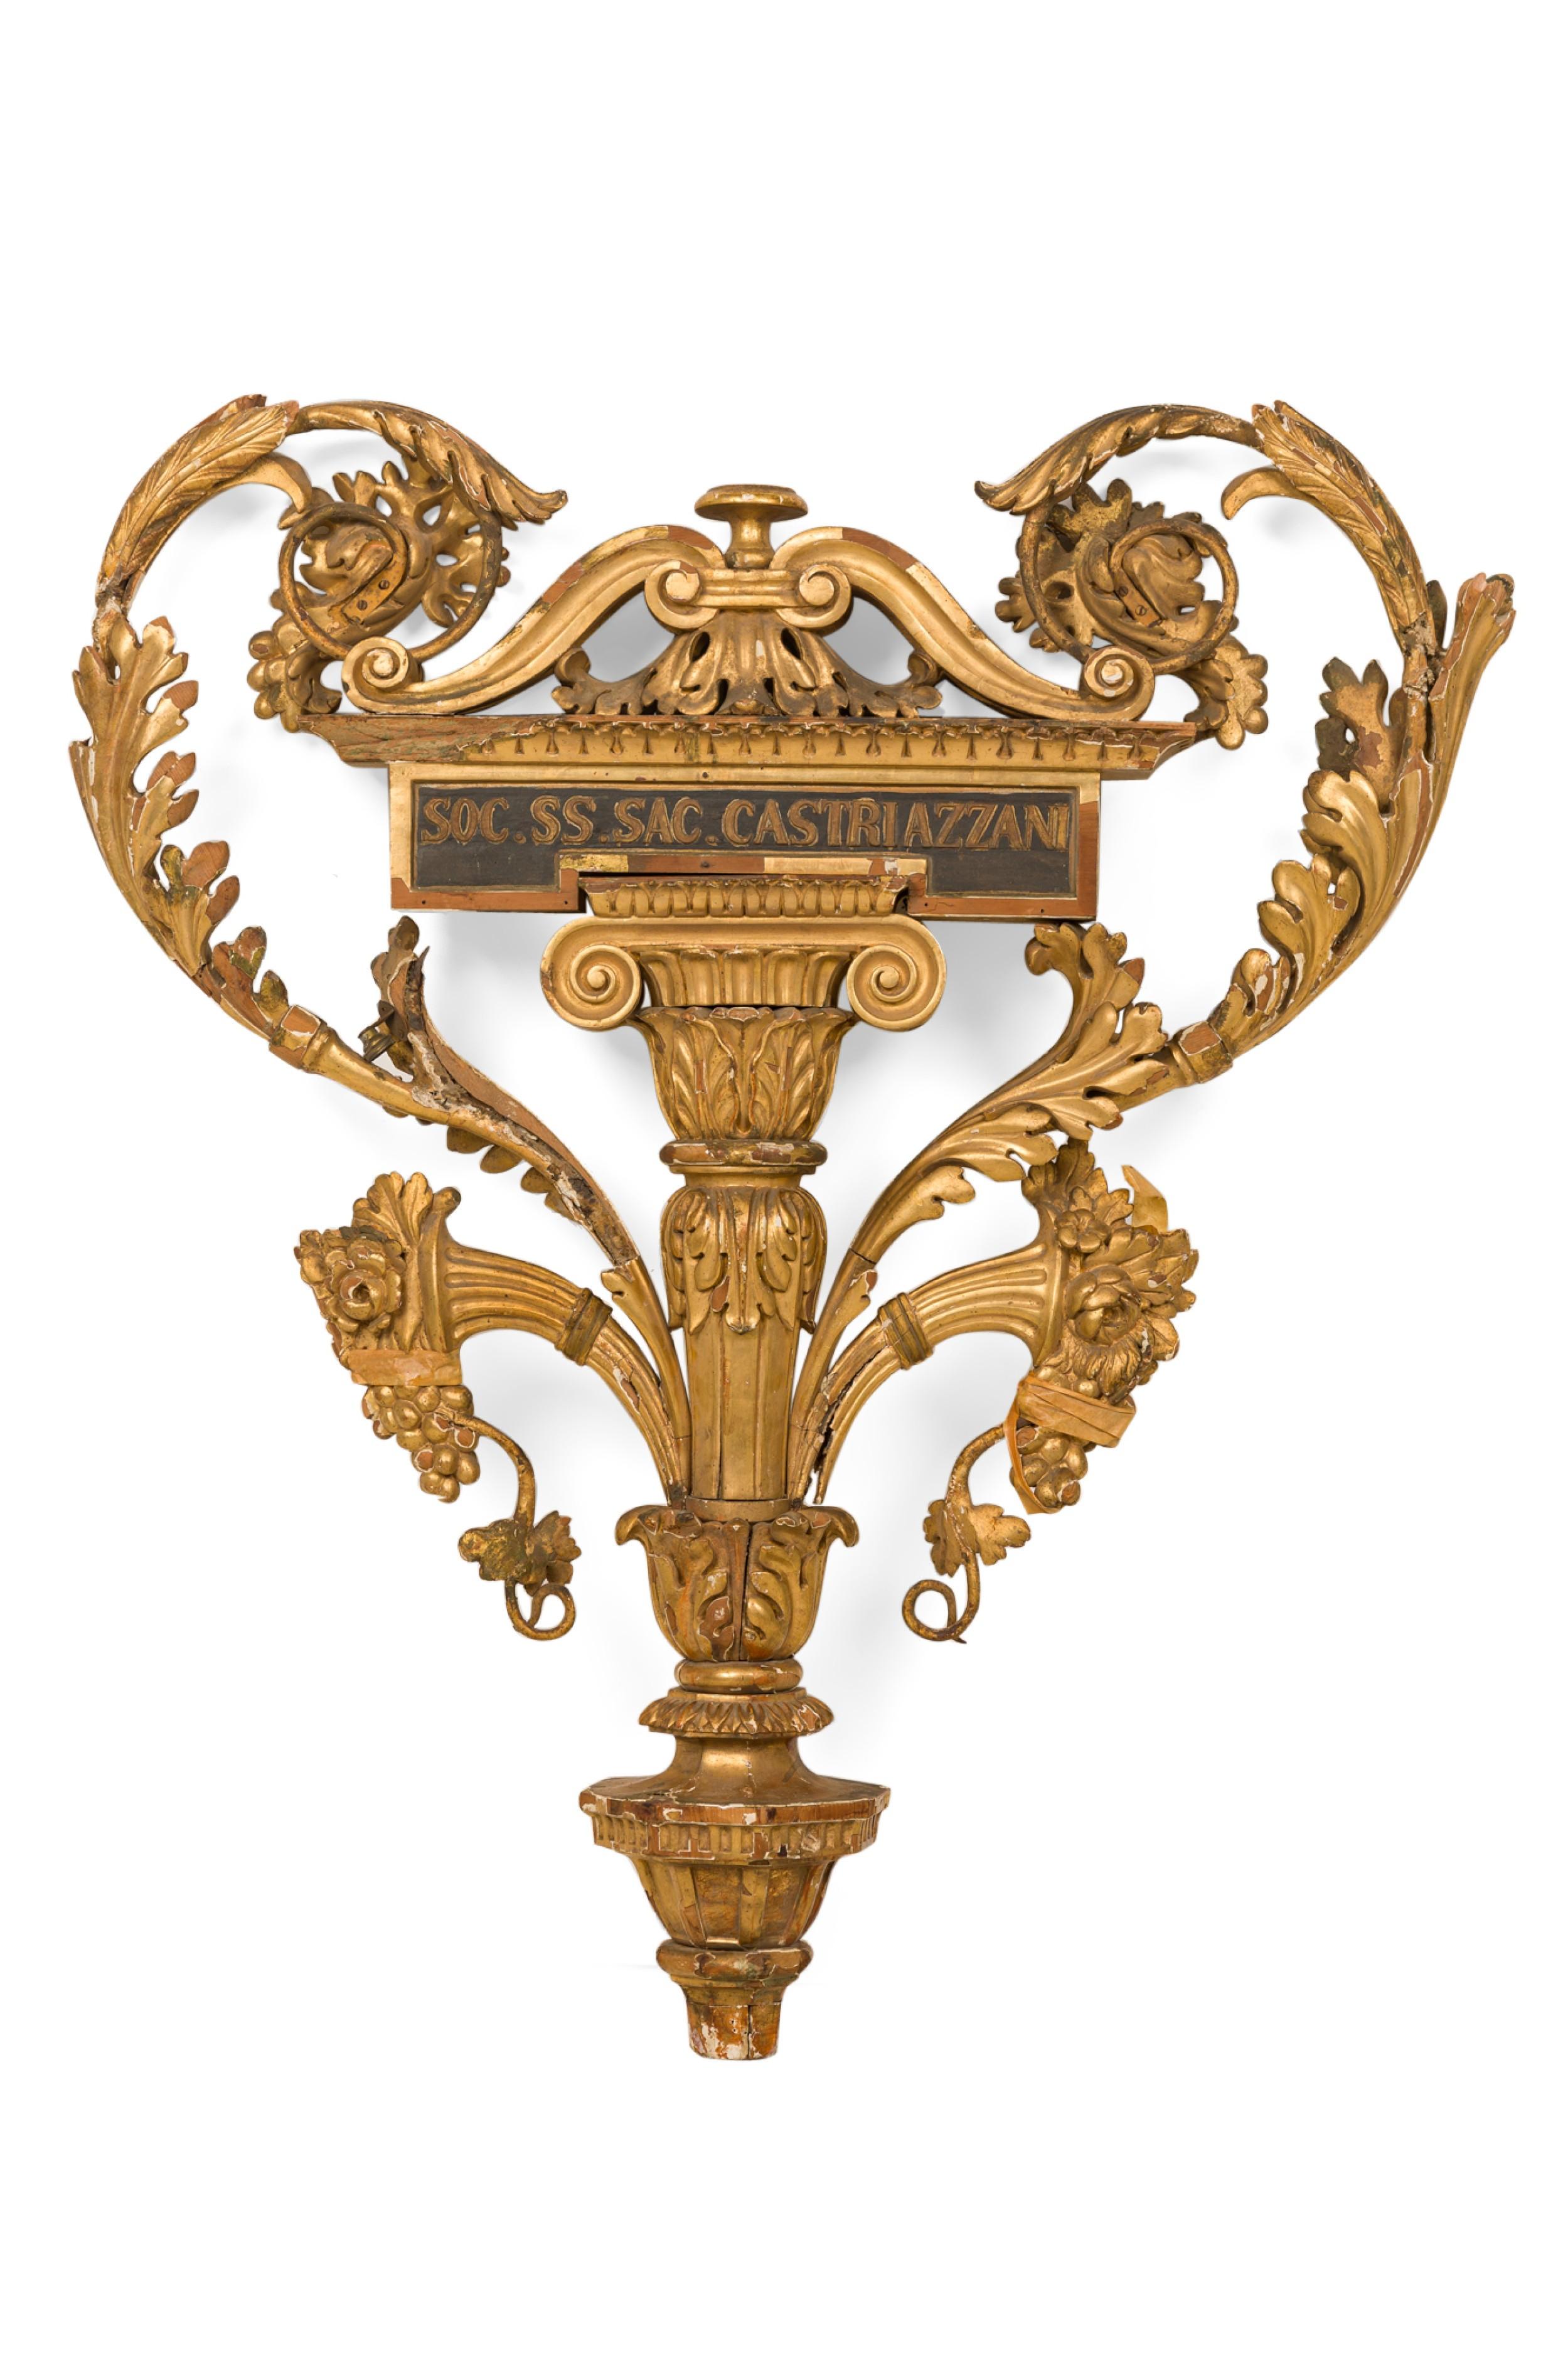 Italienische Wandtafel im neoklassischen Stil (18. Jahrhundert) aus vergoldetem Holz und Metall mit einer Säule und einem Kapitell in der Mitte, das mit einer ausladenden Schriftrolle und einem Füllhorn verziert ist
 

 Zustand: Angemessener Zustand